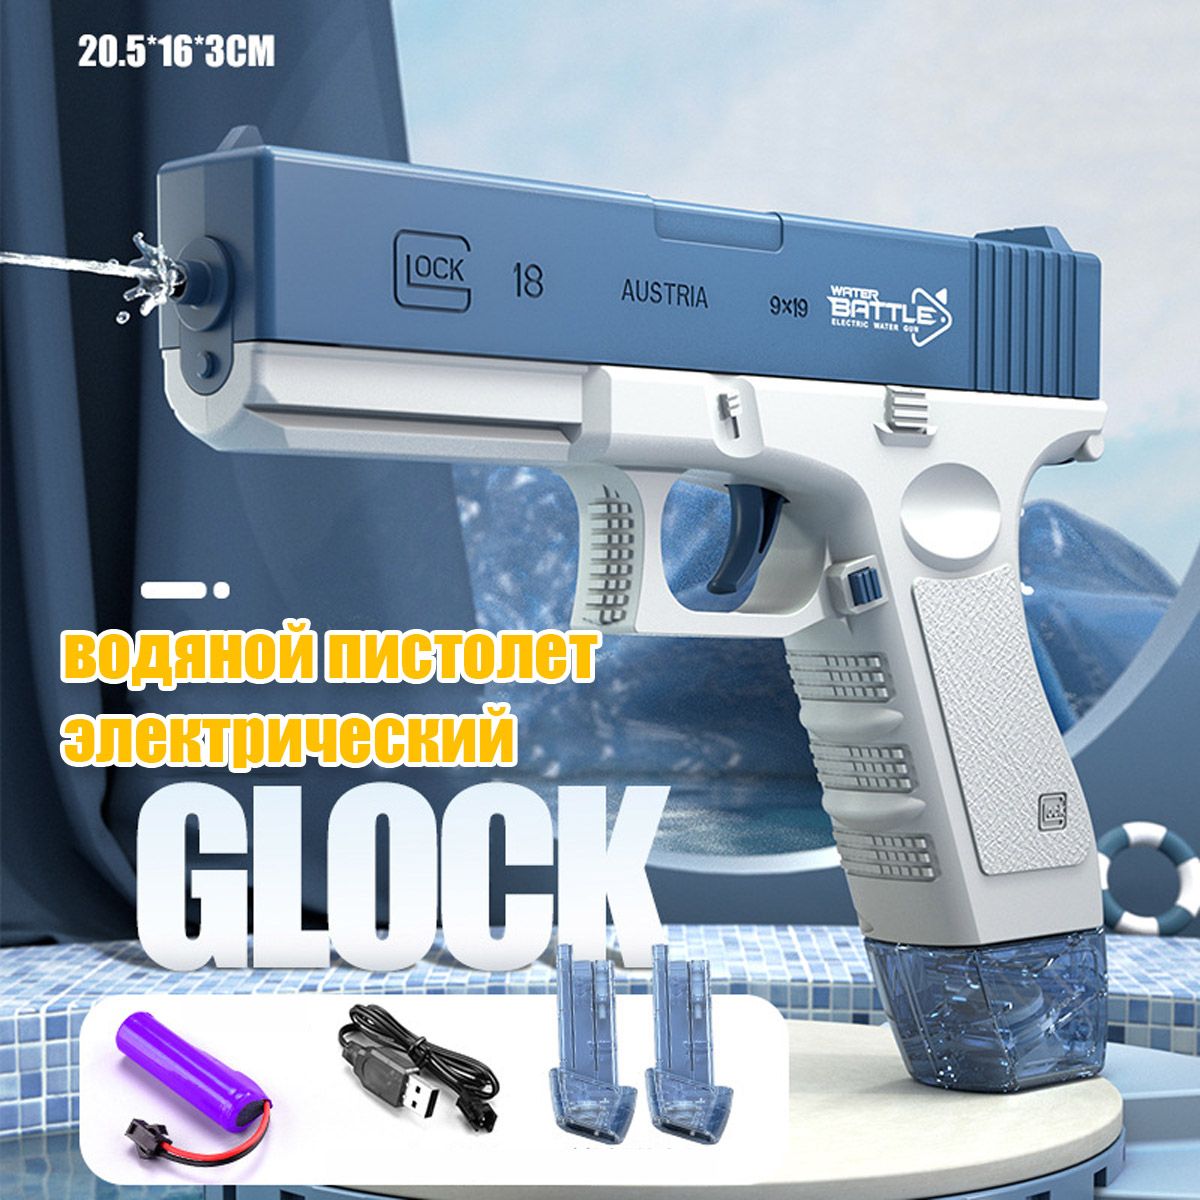 Электрический водный Пистолет игрушечный RASULEV Glok 18 на аккумуляторе водяное оружие на аккумуляторе пистолет игрушечный с функцией спрея водный бой jb0211495